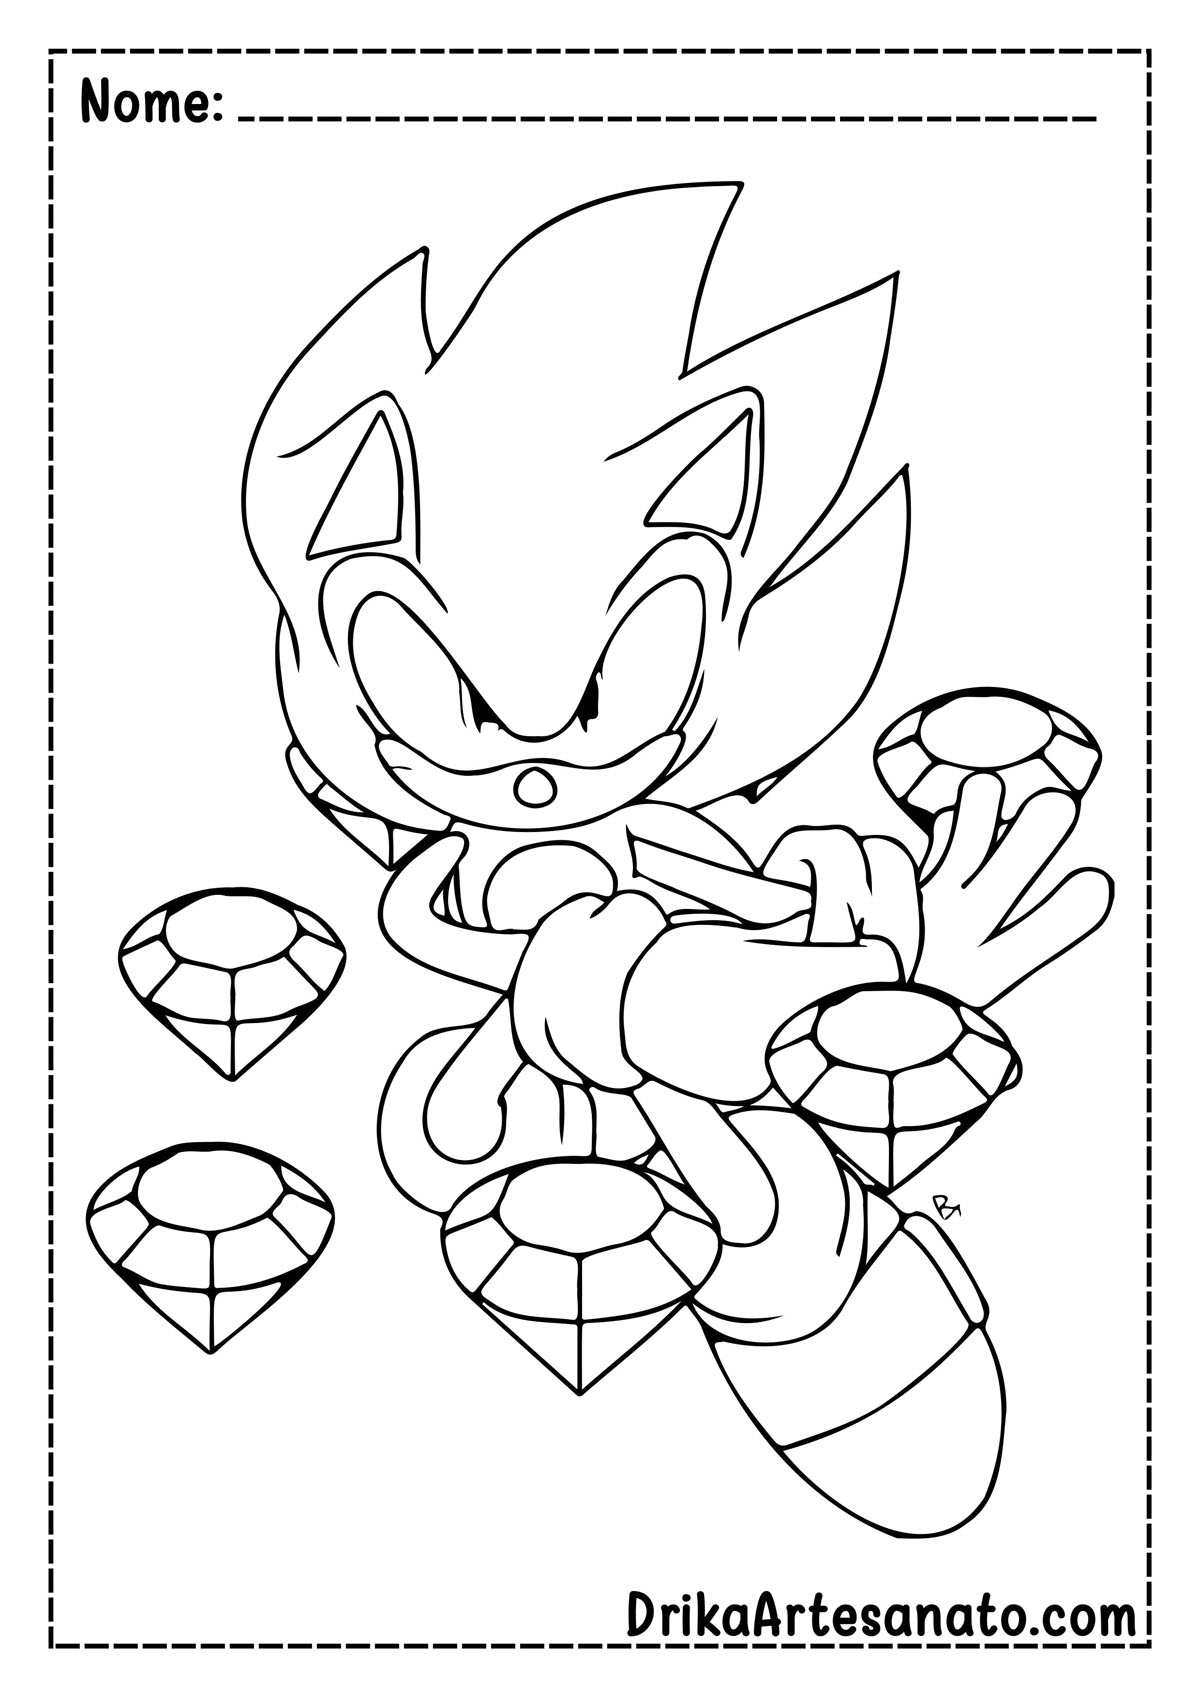 Desenho do Sonic de Desenhar